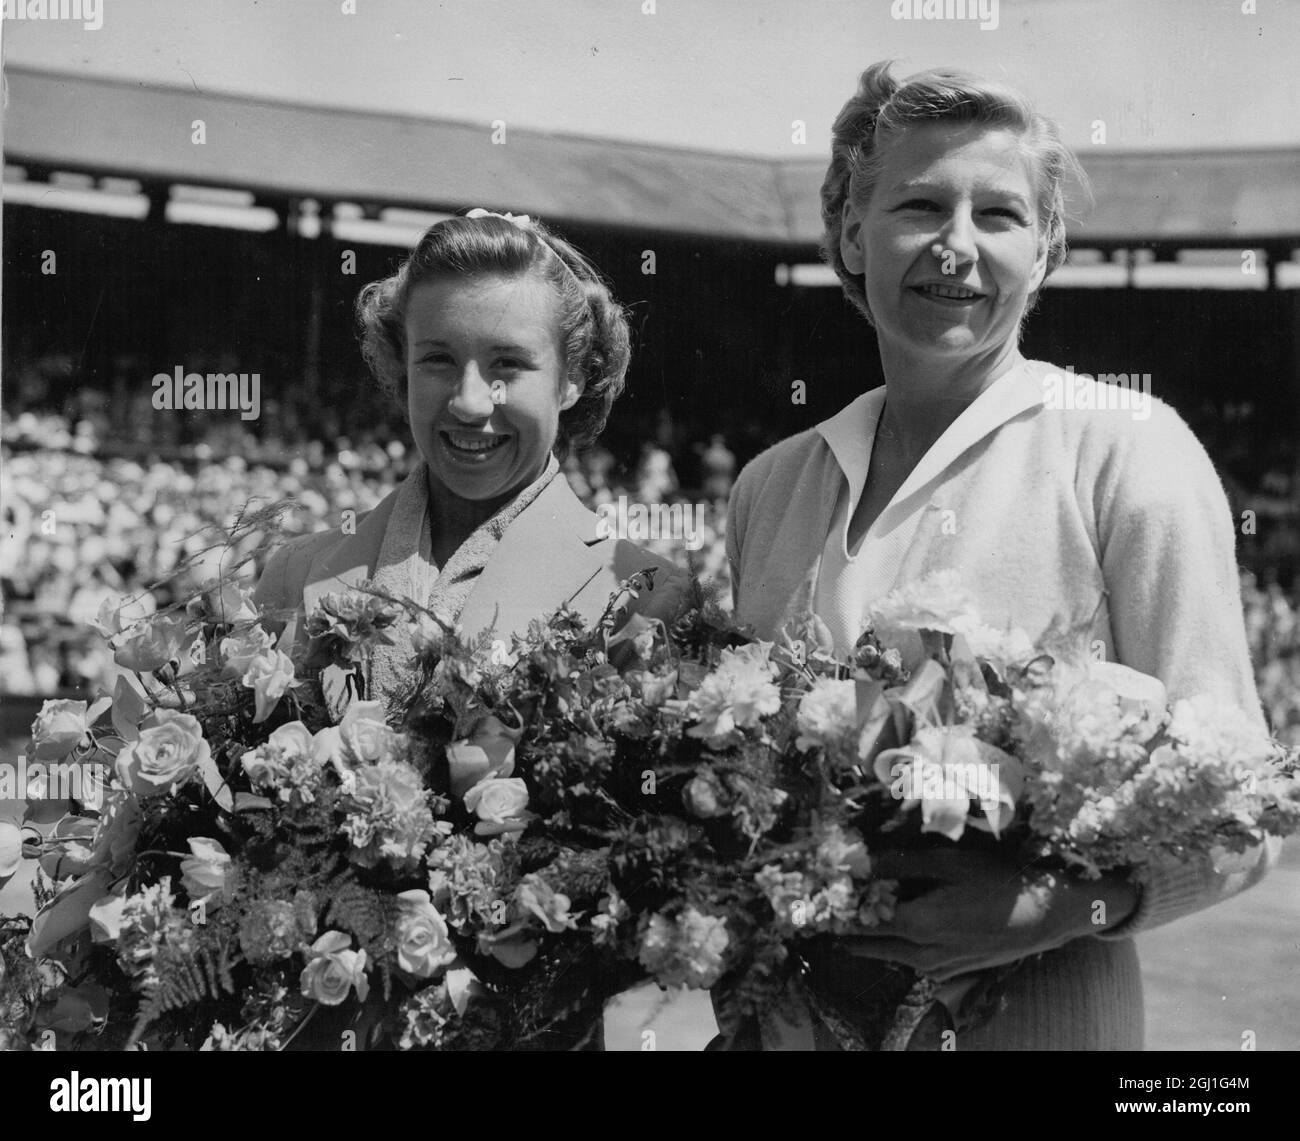 Maureen Connolly : 1934-1969 , amerikanische Tennisspielerin, Little Mo, wie sie bekannt war, hier gesehen, die einen Blumenstrauß hält, nachdem sie ihre amerikanische Kollegin Louise Brough auf dem Centre Court, Wimbledon, London, England, geschlagen hat 5. Juli 1952 Stockfoto